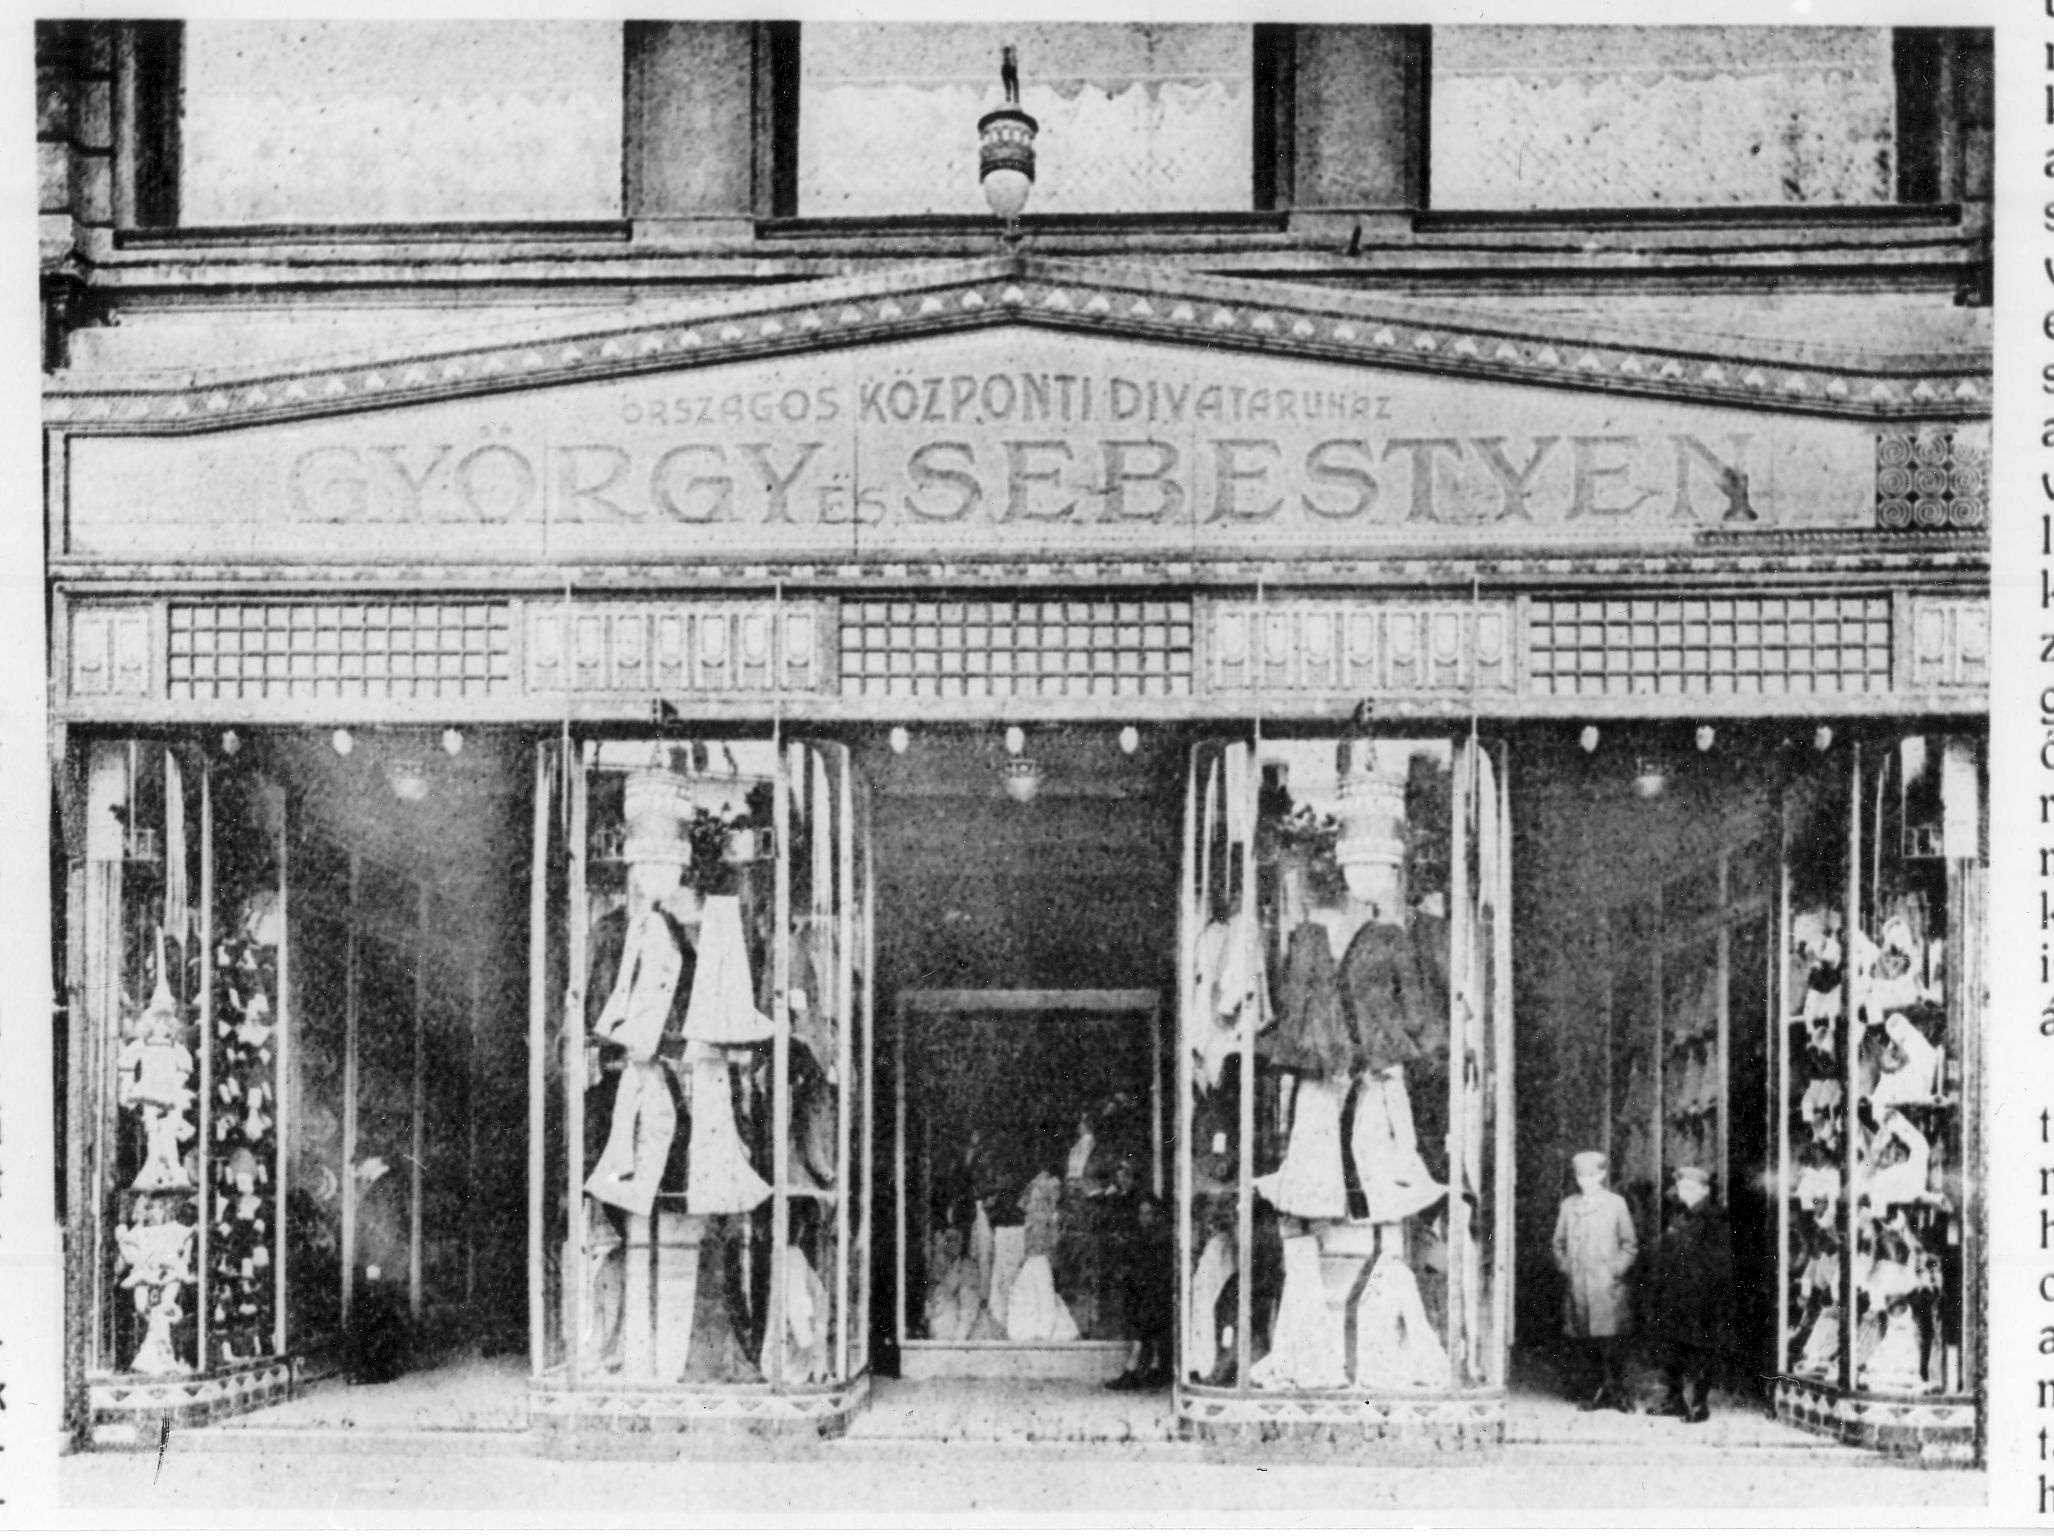 György és Sebestyén divatáruház (Magyar Kereskedelmi és Vendéglátóipari Múzeum CC BY-NC-ND)